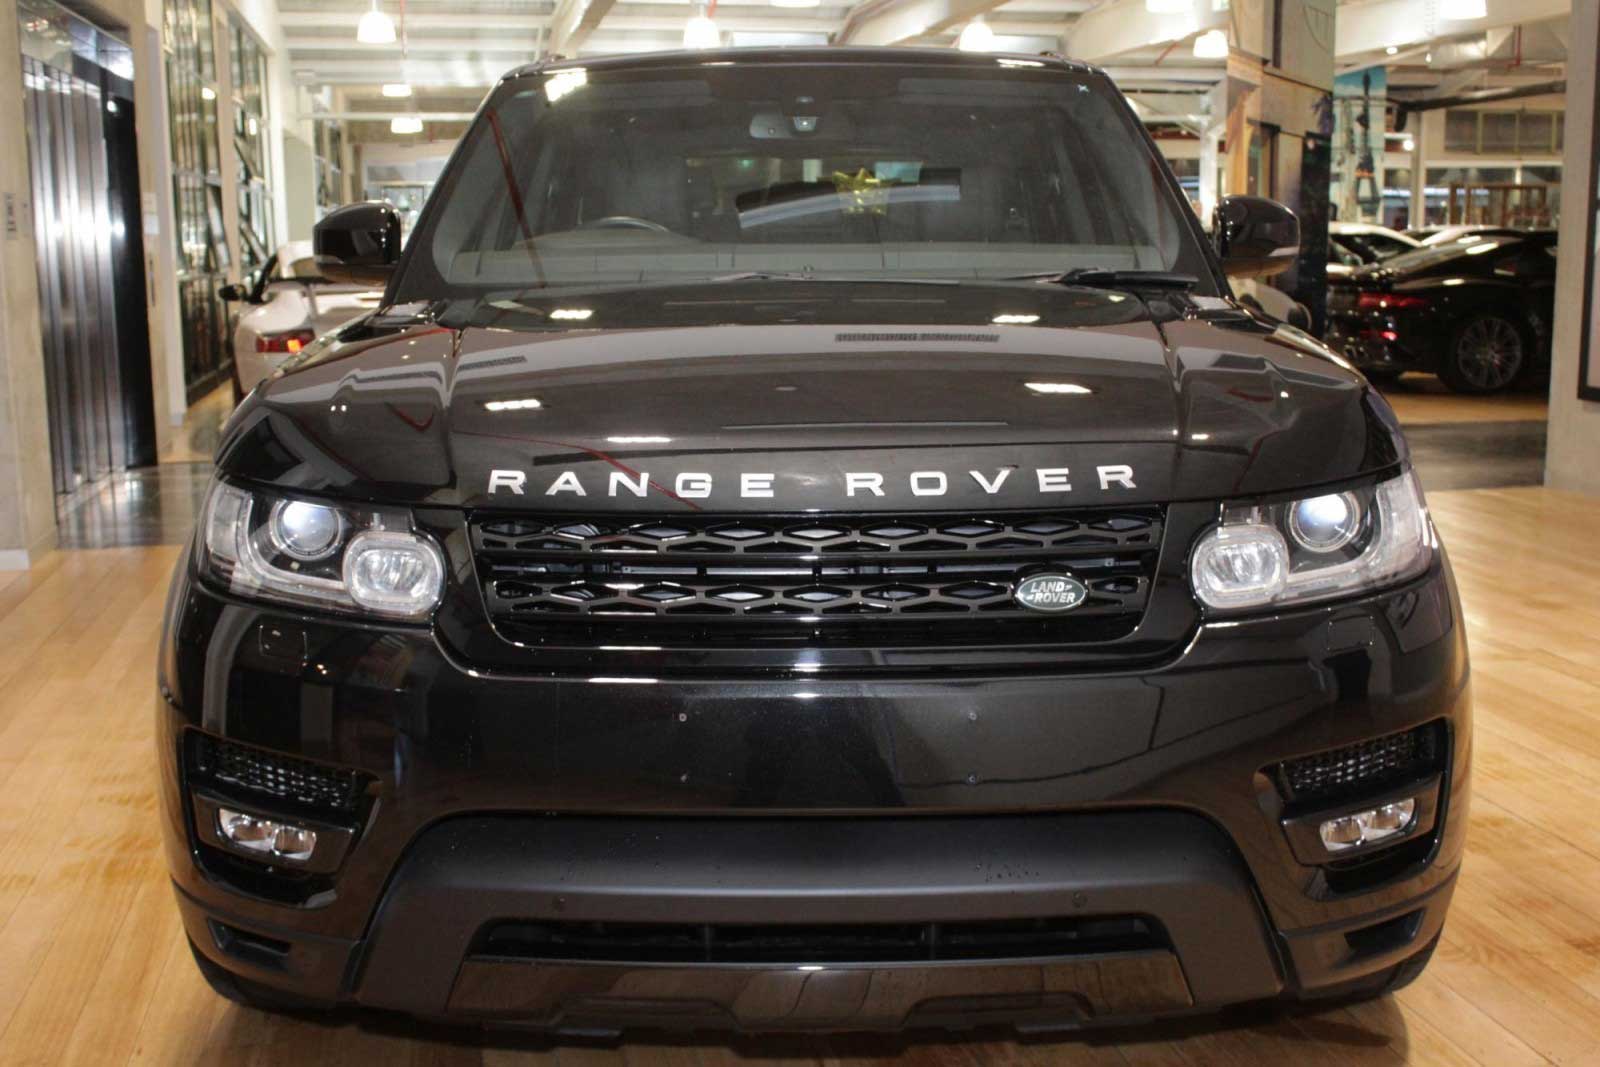 Решетка радиатора Range Rover Sport L494.
Для модели 2013-2019 г.в.
Материал: ABS-пластик.
Цвет: черный глянцевый